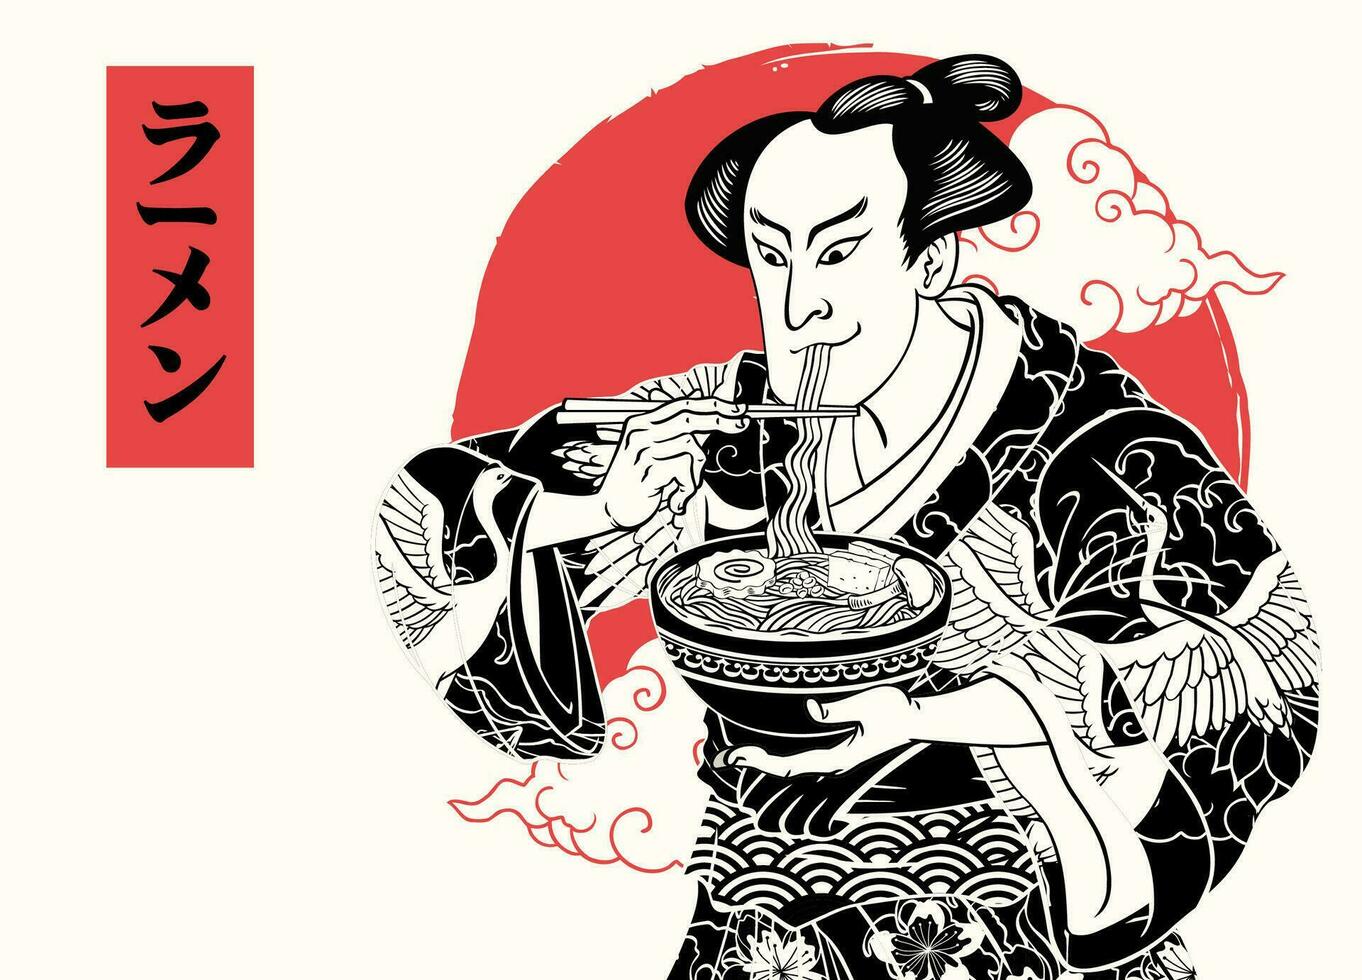 Clásico dibujo japonés pintura hombres póster comiendo fideos con japonés texto medio ramen vector